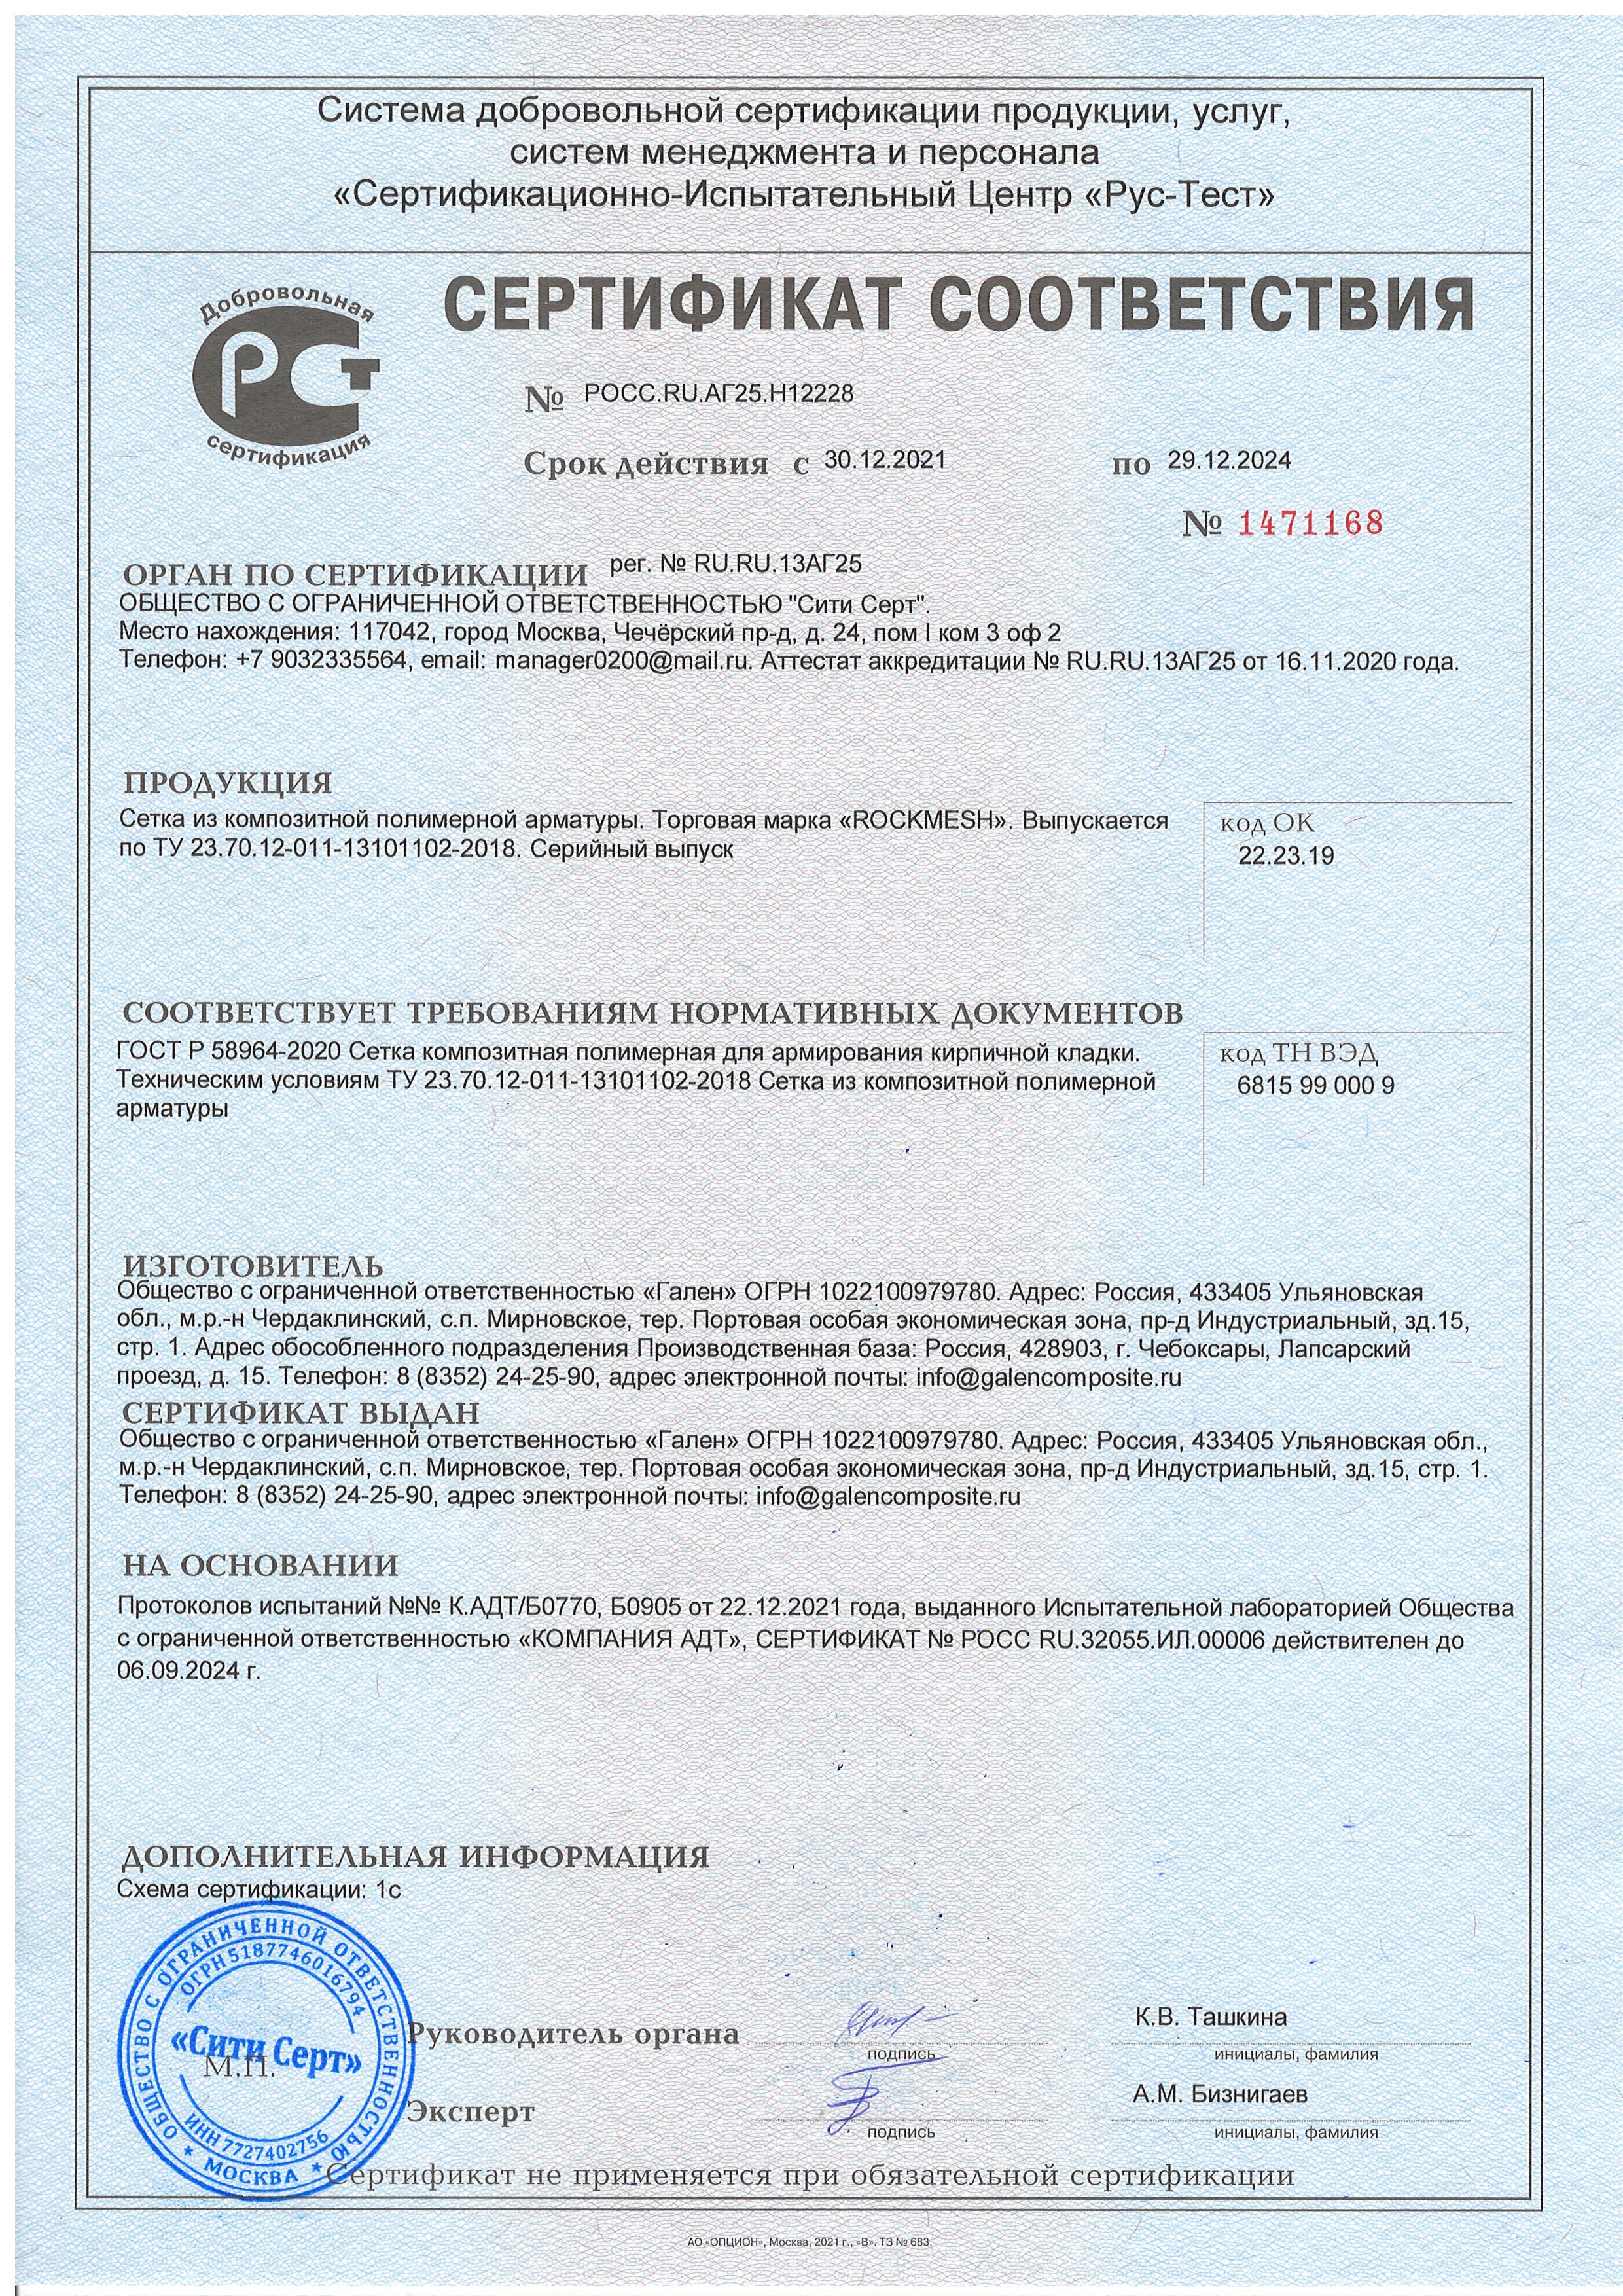 Сертификат соответствия на сетку из композитной полимерной арматуры